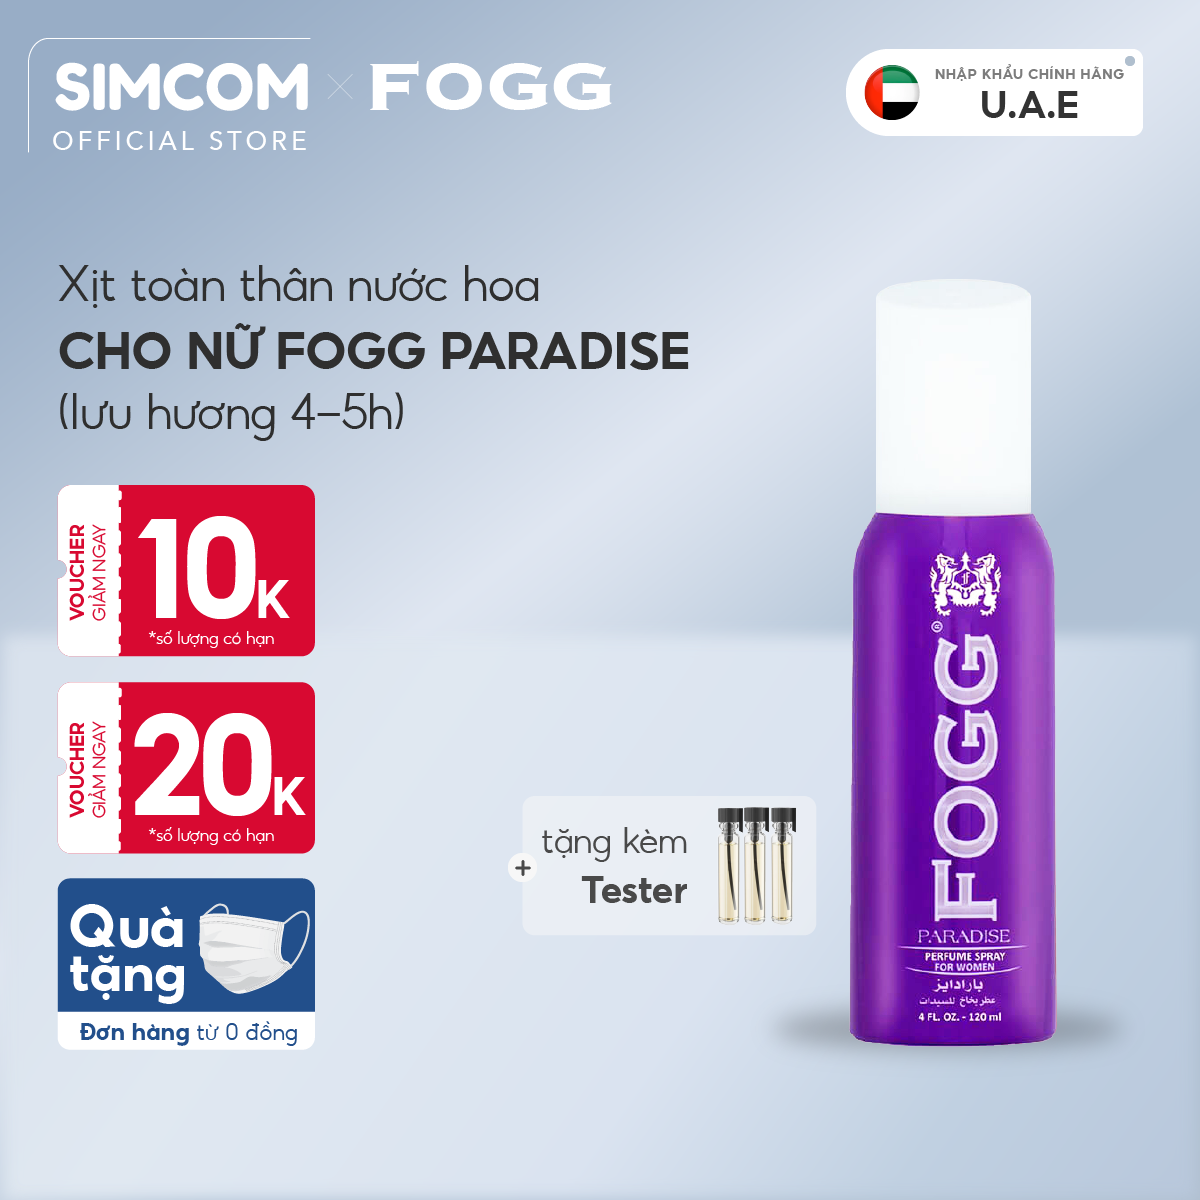 Xịt toàn thân hương nước hoa FOGG Paradised 120ml chính hãng dubai, xịt thơm body mist dành cho cả nam và nữ, unisex không gas lưu hương lâu 4-5 tiếng mùi hương ngọt ngào, Simcom